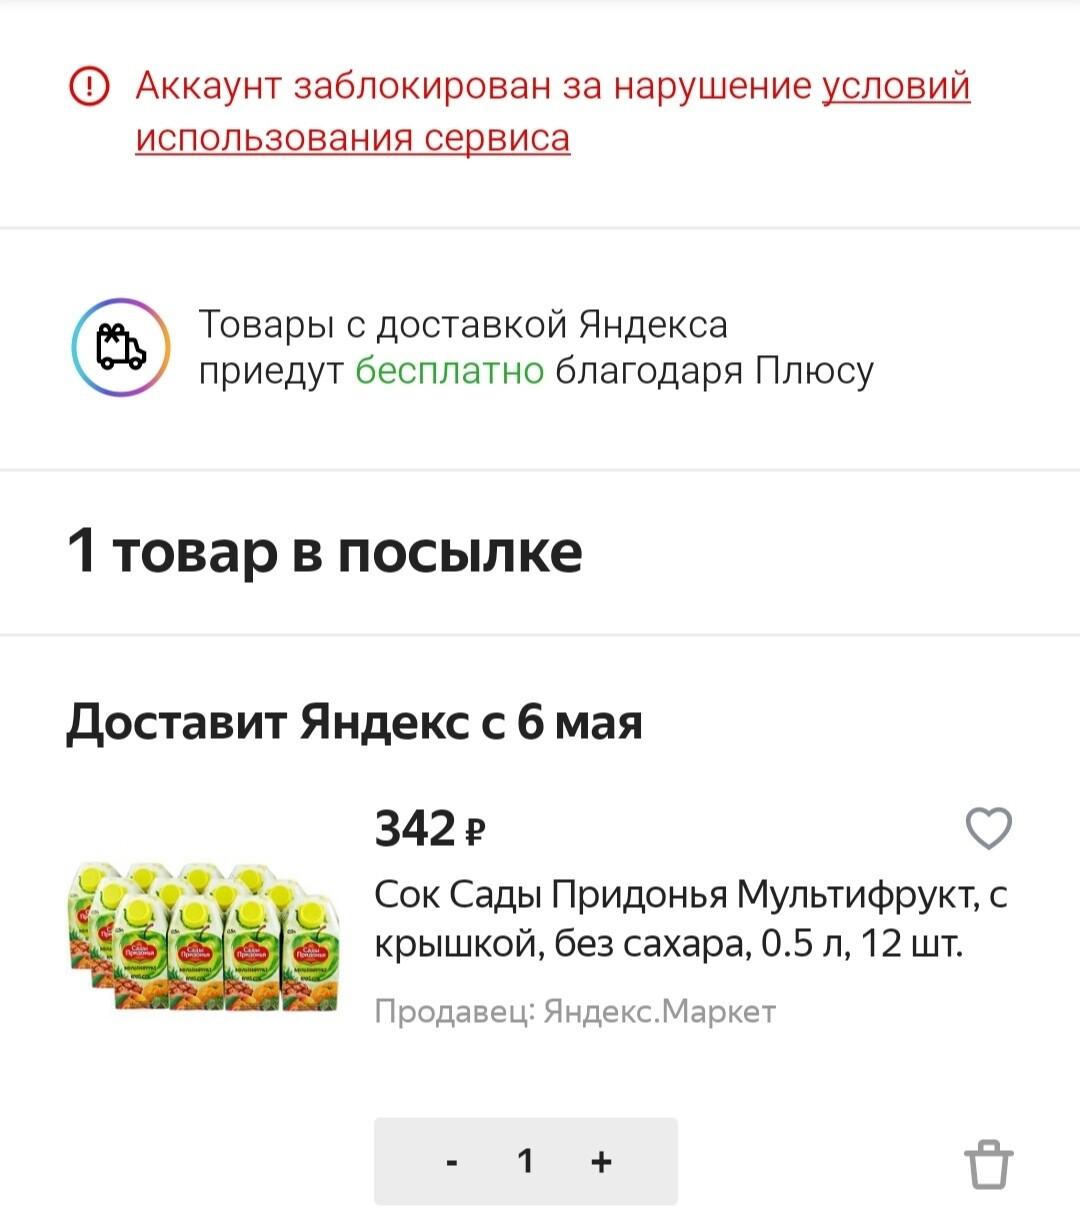 Мой аккаунт на «Яндекс.Маркете» с «Плюсом» и баллами заблокировали — по словам поддержки, разблокировка невозможна